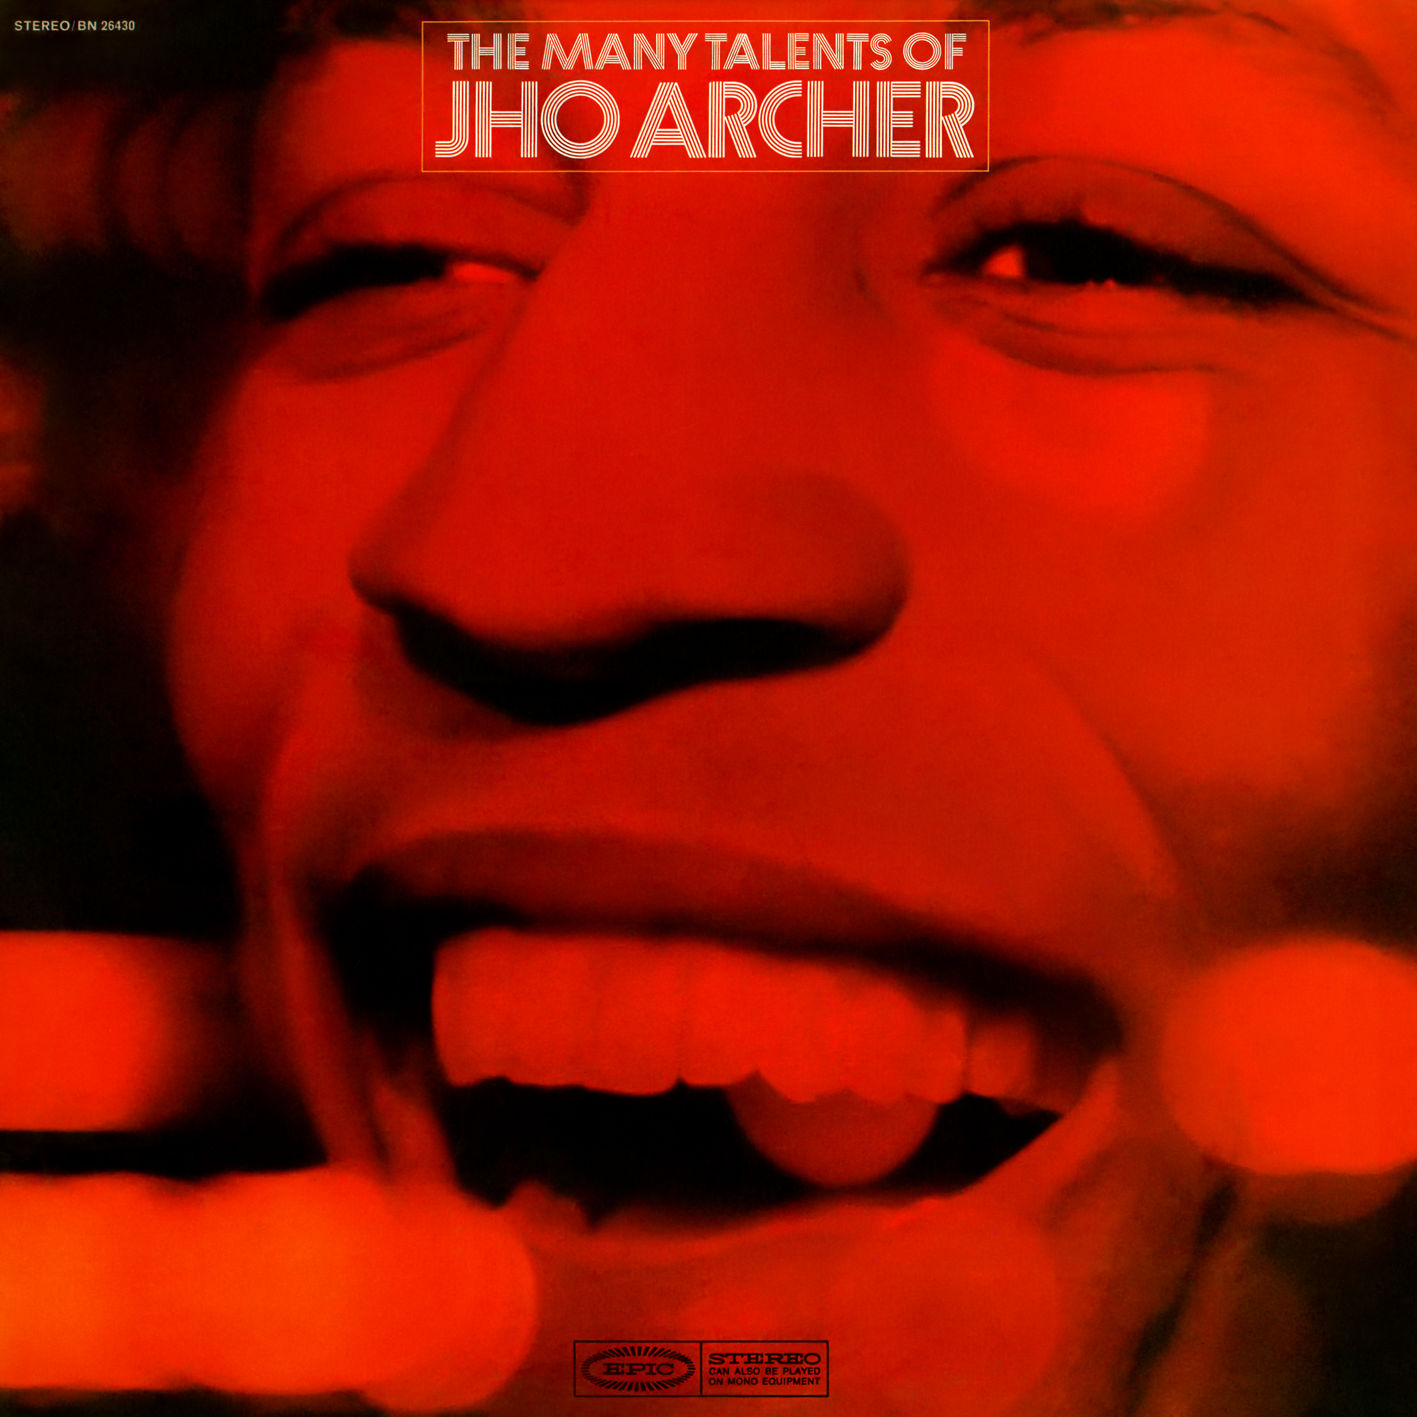 Jho Archer - The Many Talents of Jho Archer (1968/2018) [FLAC 24bit/96kHz]